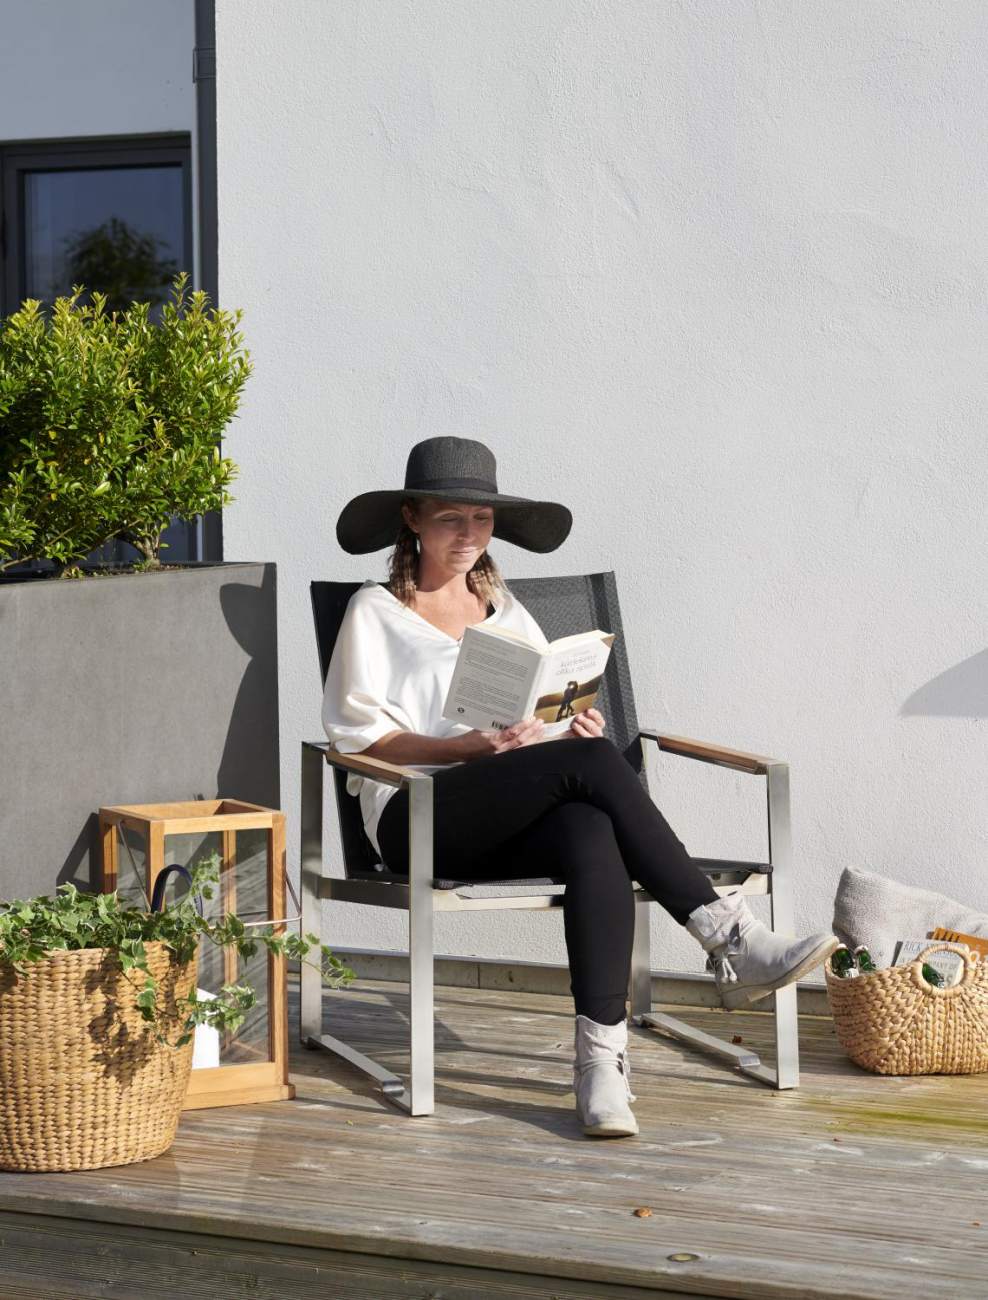 Der Gartensessel Gotland überzeugt mit seinem modernen Design. Gefertigt wurde er aus Textilene, welches einen schwarzen Farbton besitzt. Das Gestell ist aus Metall und hat eine silberne Farbe. Die Sitzhöhe des Sessels beträgt 40 cm.